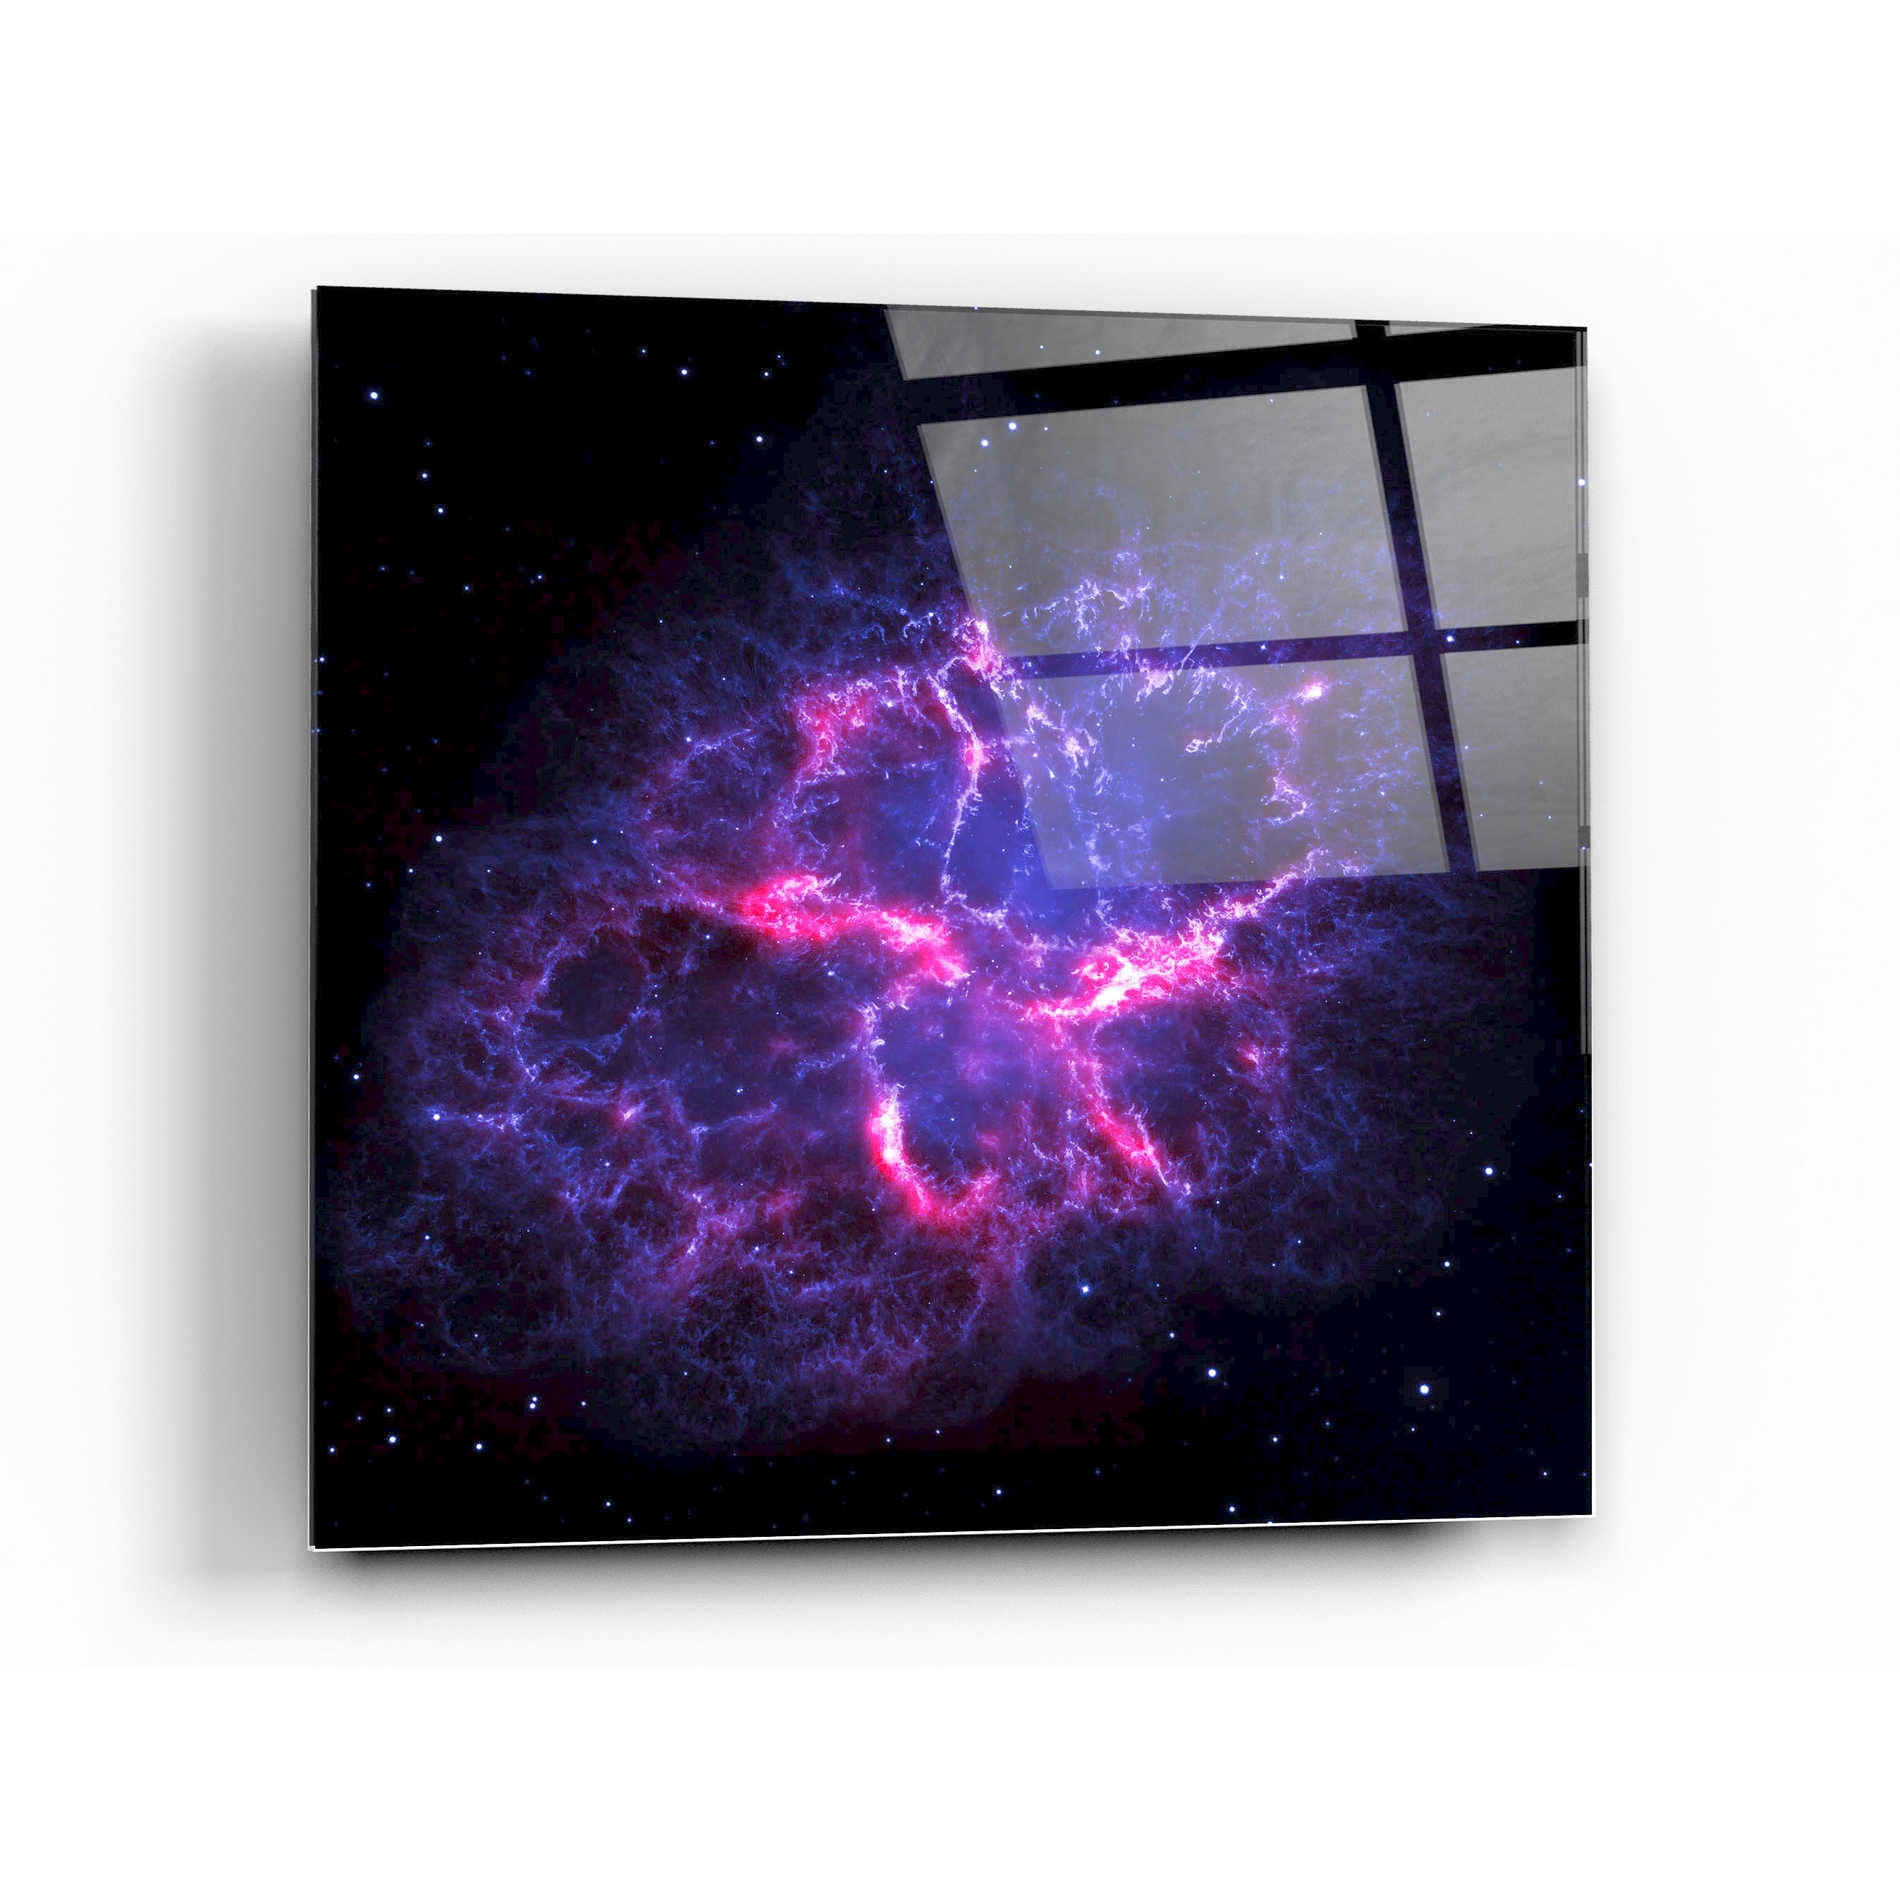 Epic Art "Crab Nebula" Hubble Space Telescope Acrylic Glass Wall Art